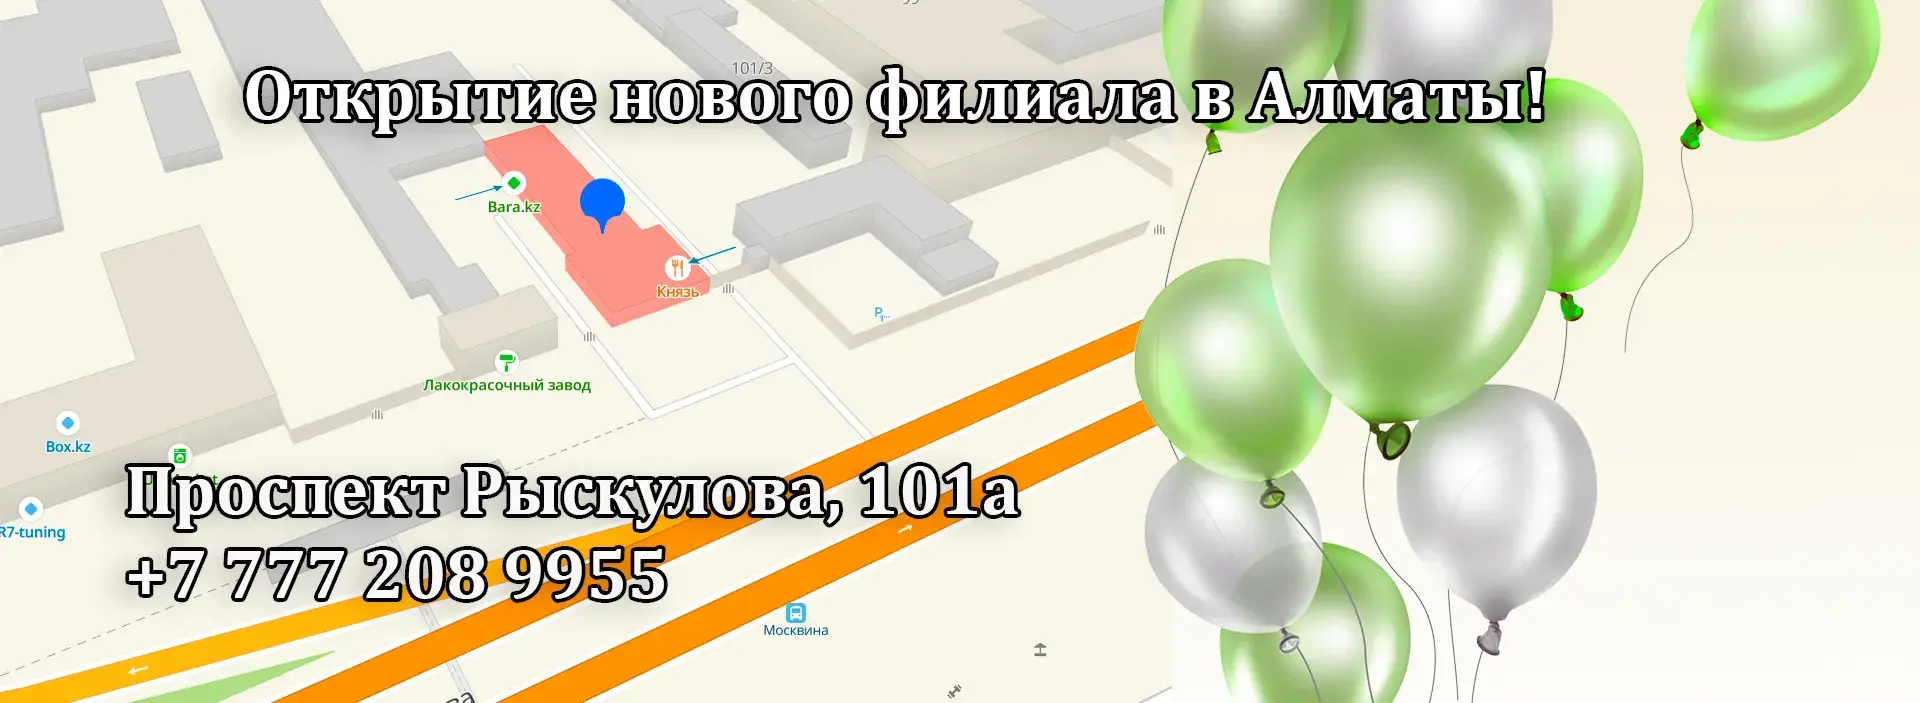 Адрес в Алматы